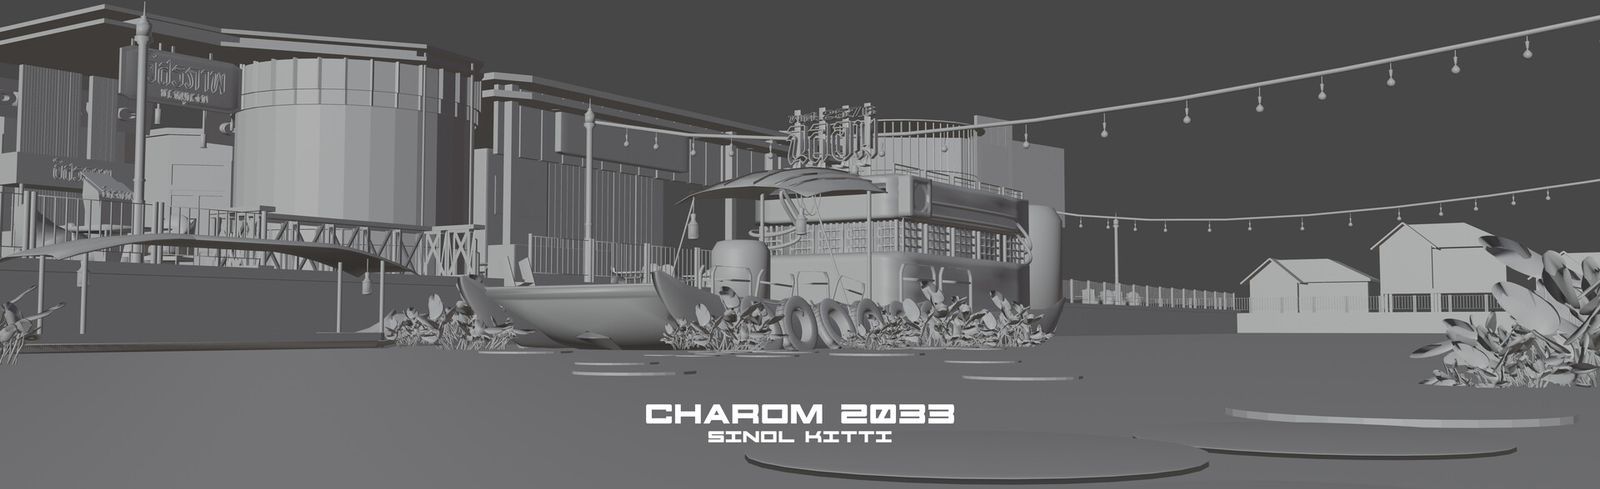 sinol-kitti-charom-2033.jpg